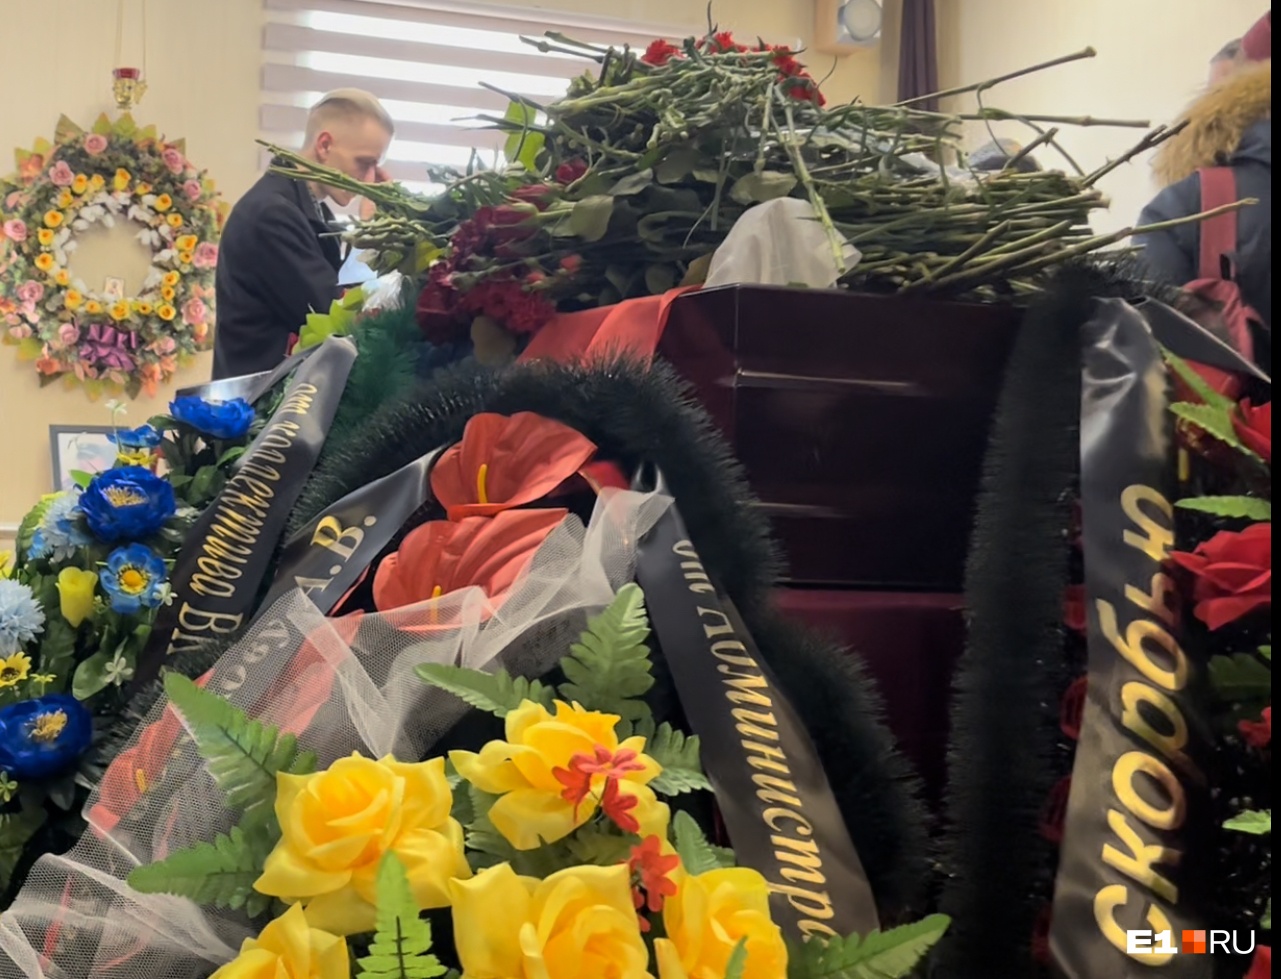 Сколько бойцов погибло на украине. Прощание с военными погибшими в зале. Гроб в траурном зале. Похороны военных погибших на Украине 2022.